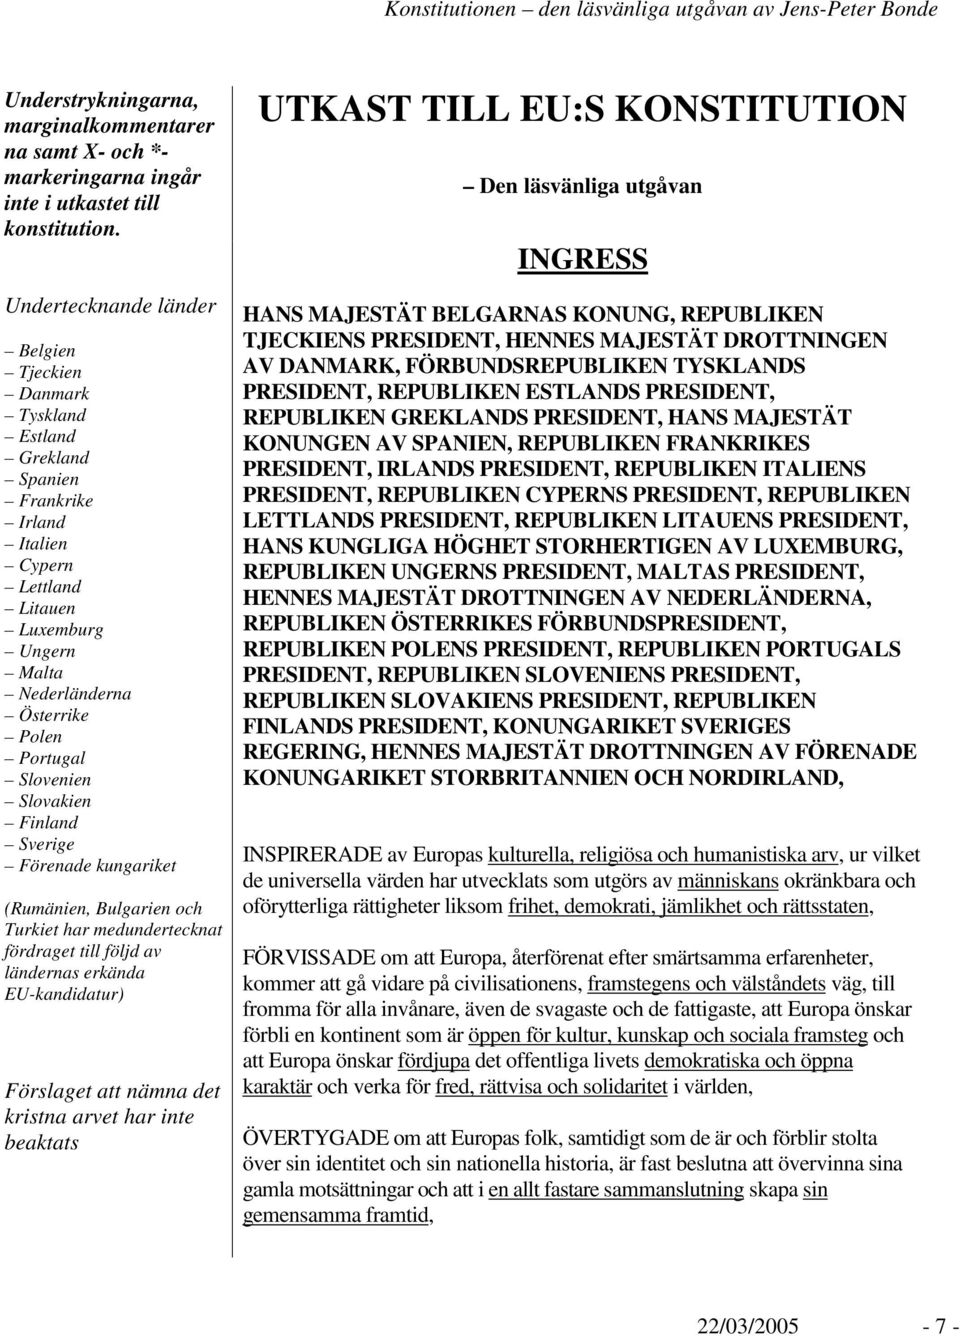 Slovenien Slovakien Finland Sverige Förenade kungariket (Rumänien, Bulgarien och Turkiet har medundertecknat fördraget till följd av ländernas erkända EU-kandidatur) Förslaget att nämna det kristna